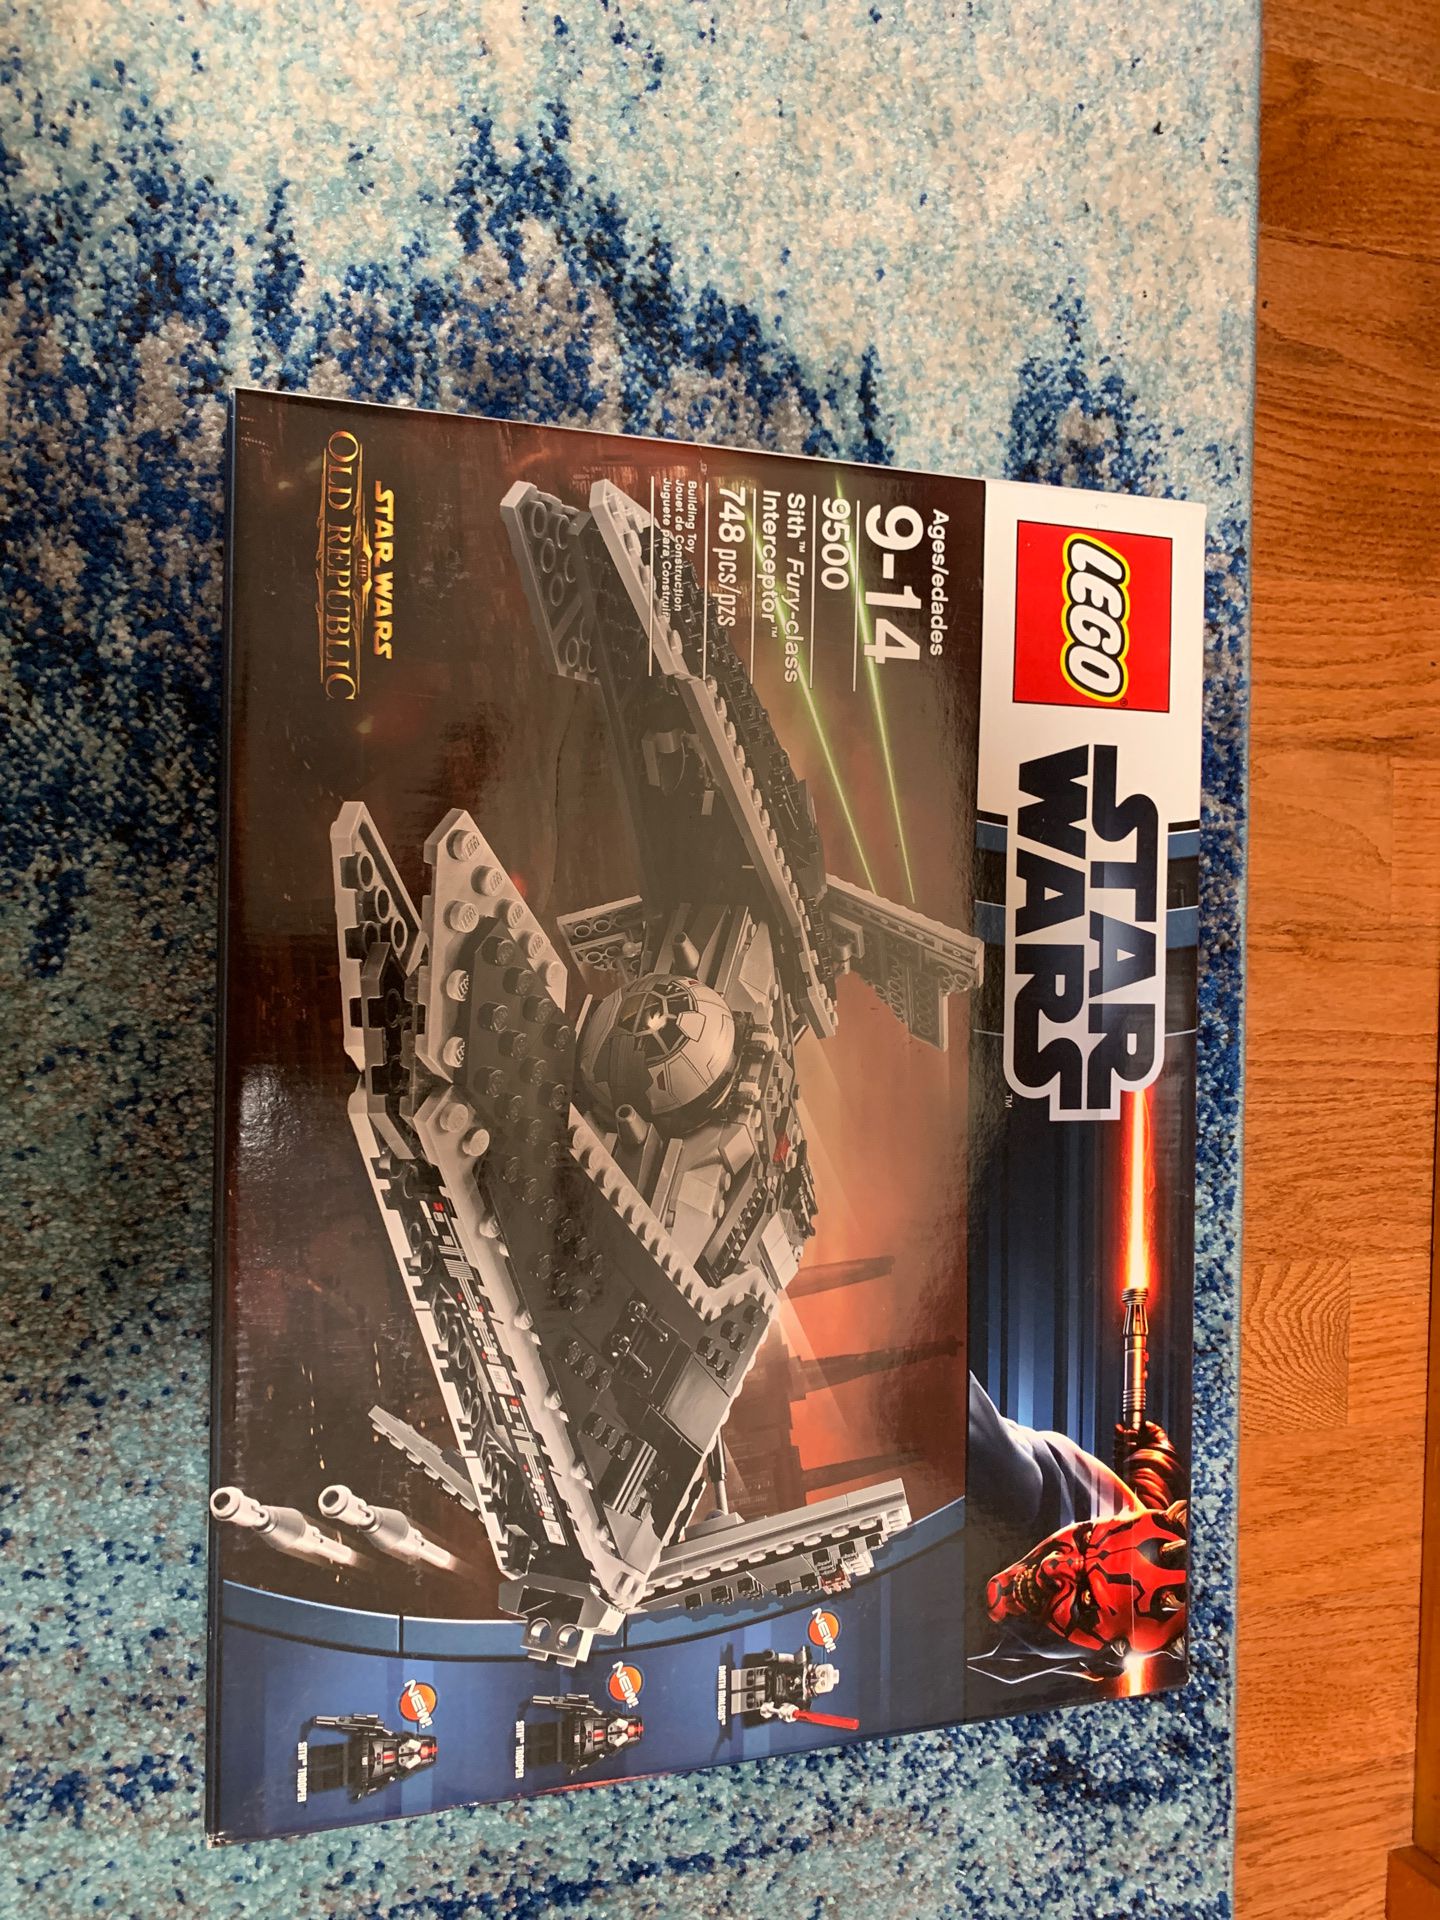 LEGO Star Wars Sith Fury-class Interceptor 9500